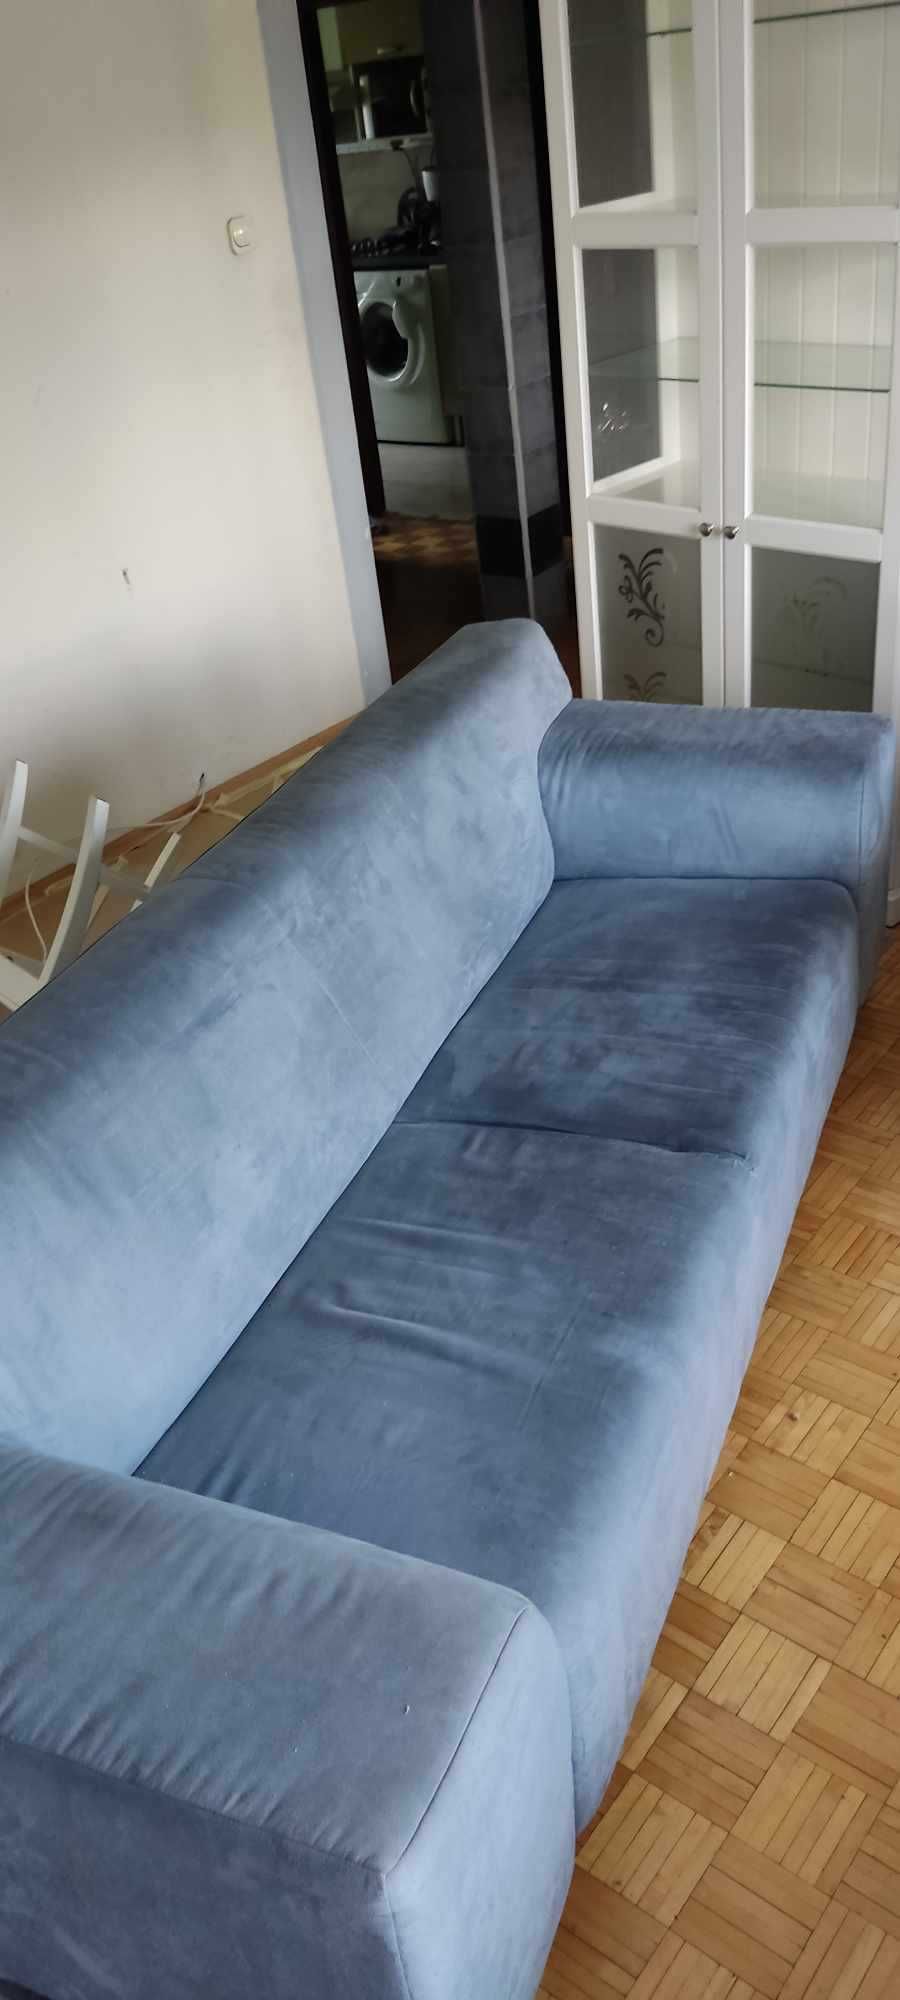 Błękitna sofa używana w dobrym stanie